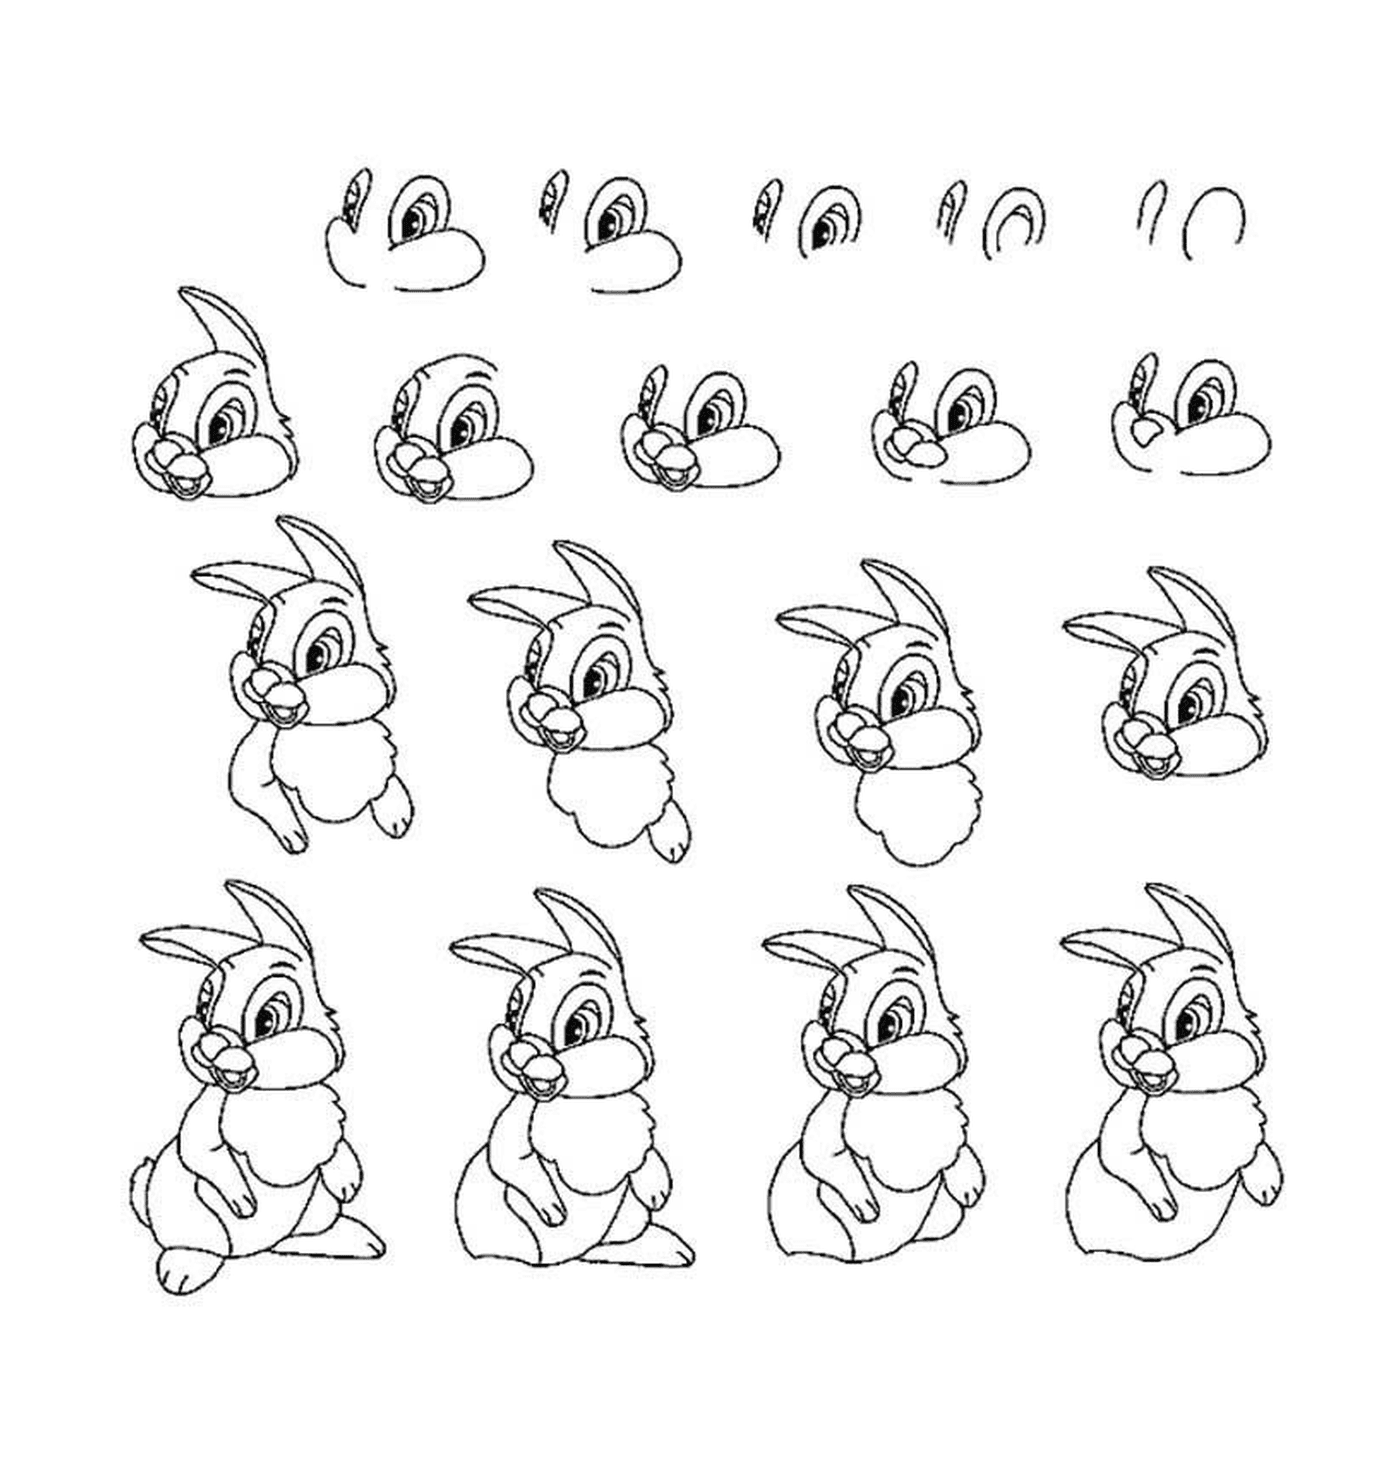  اختلاف وضع الأرنب 